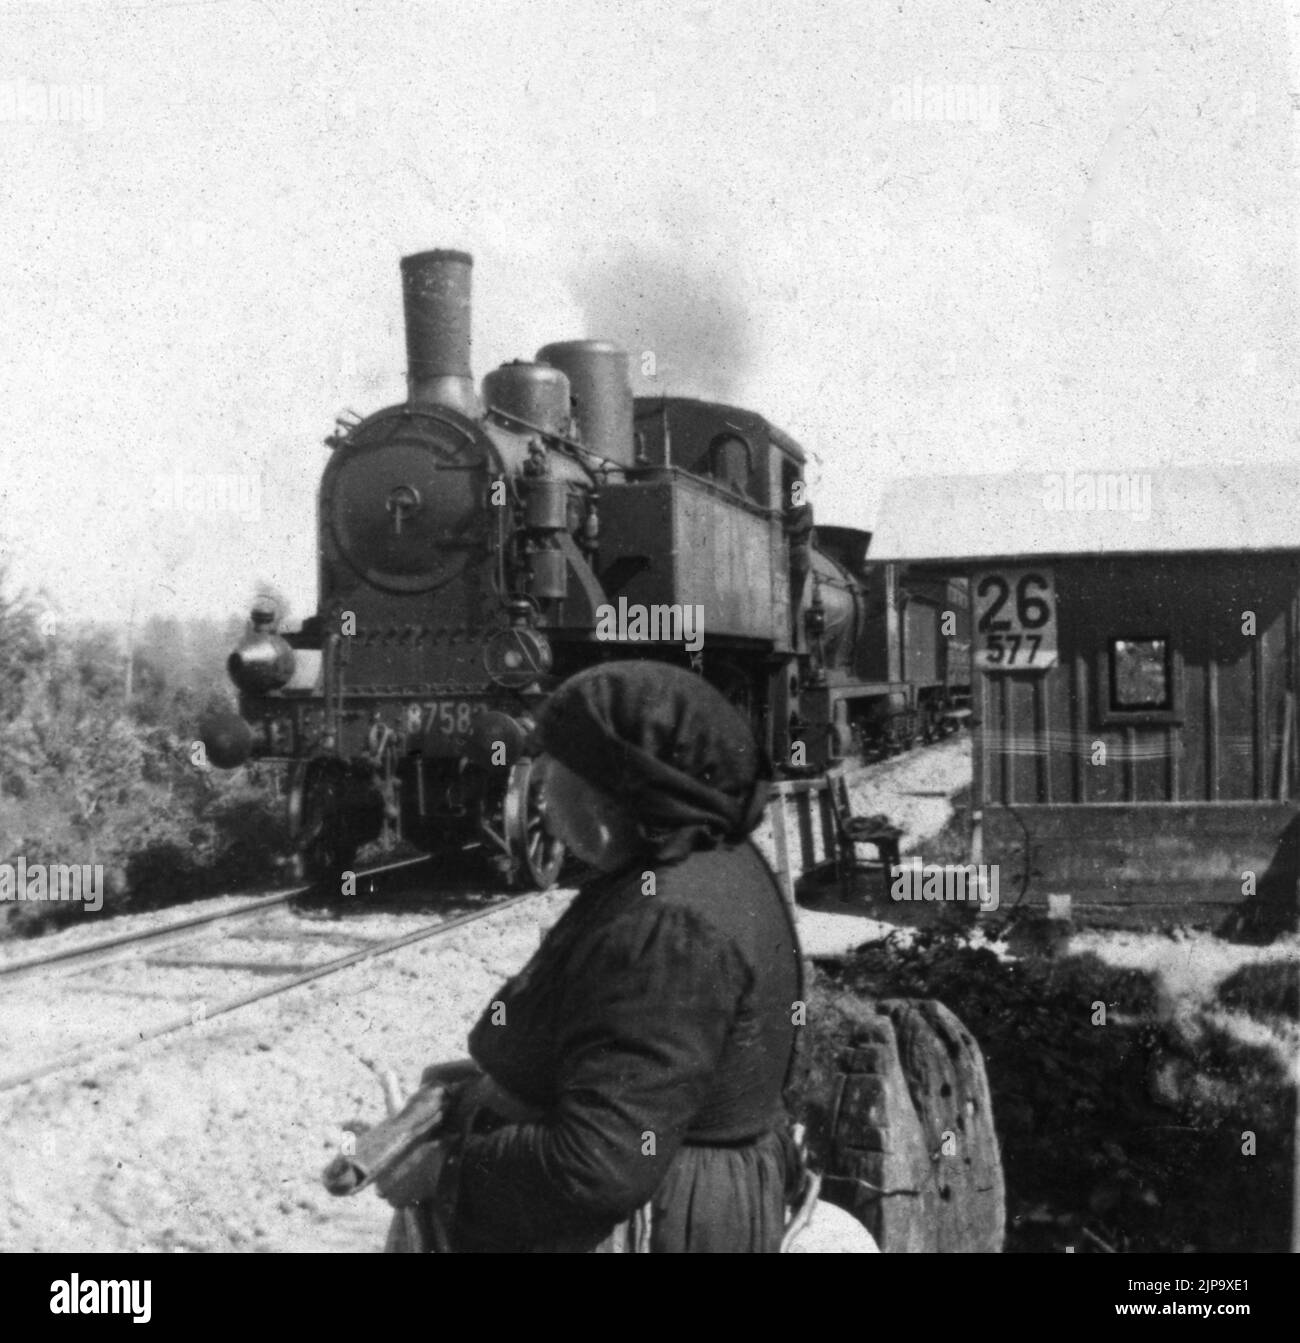 Treni e Tram - Locomotiva a vapore Gruppo 875 era una locotender progettata dalle Ferrovie dello Stato per il servizio viaggiatori sulle linee secondarie. Stock Photo